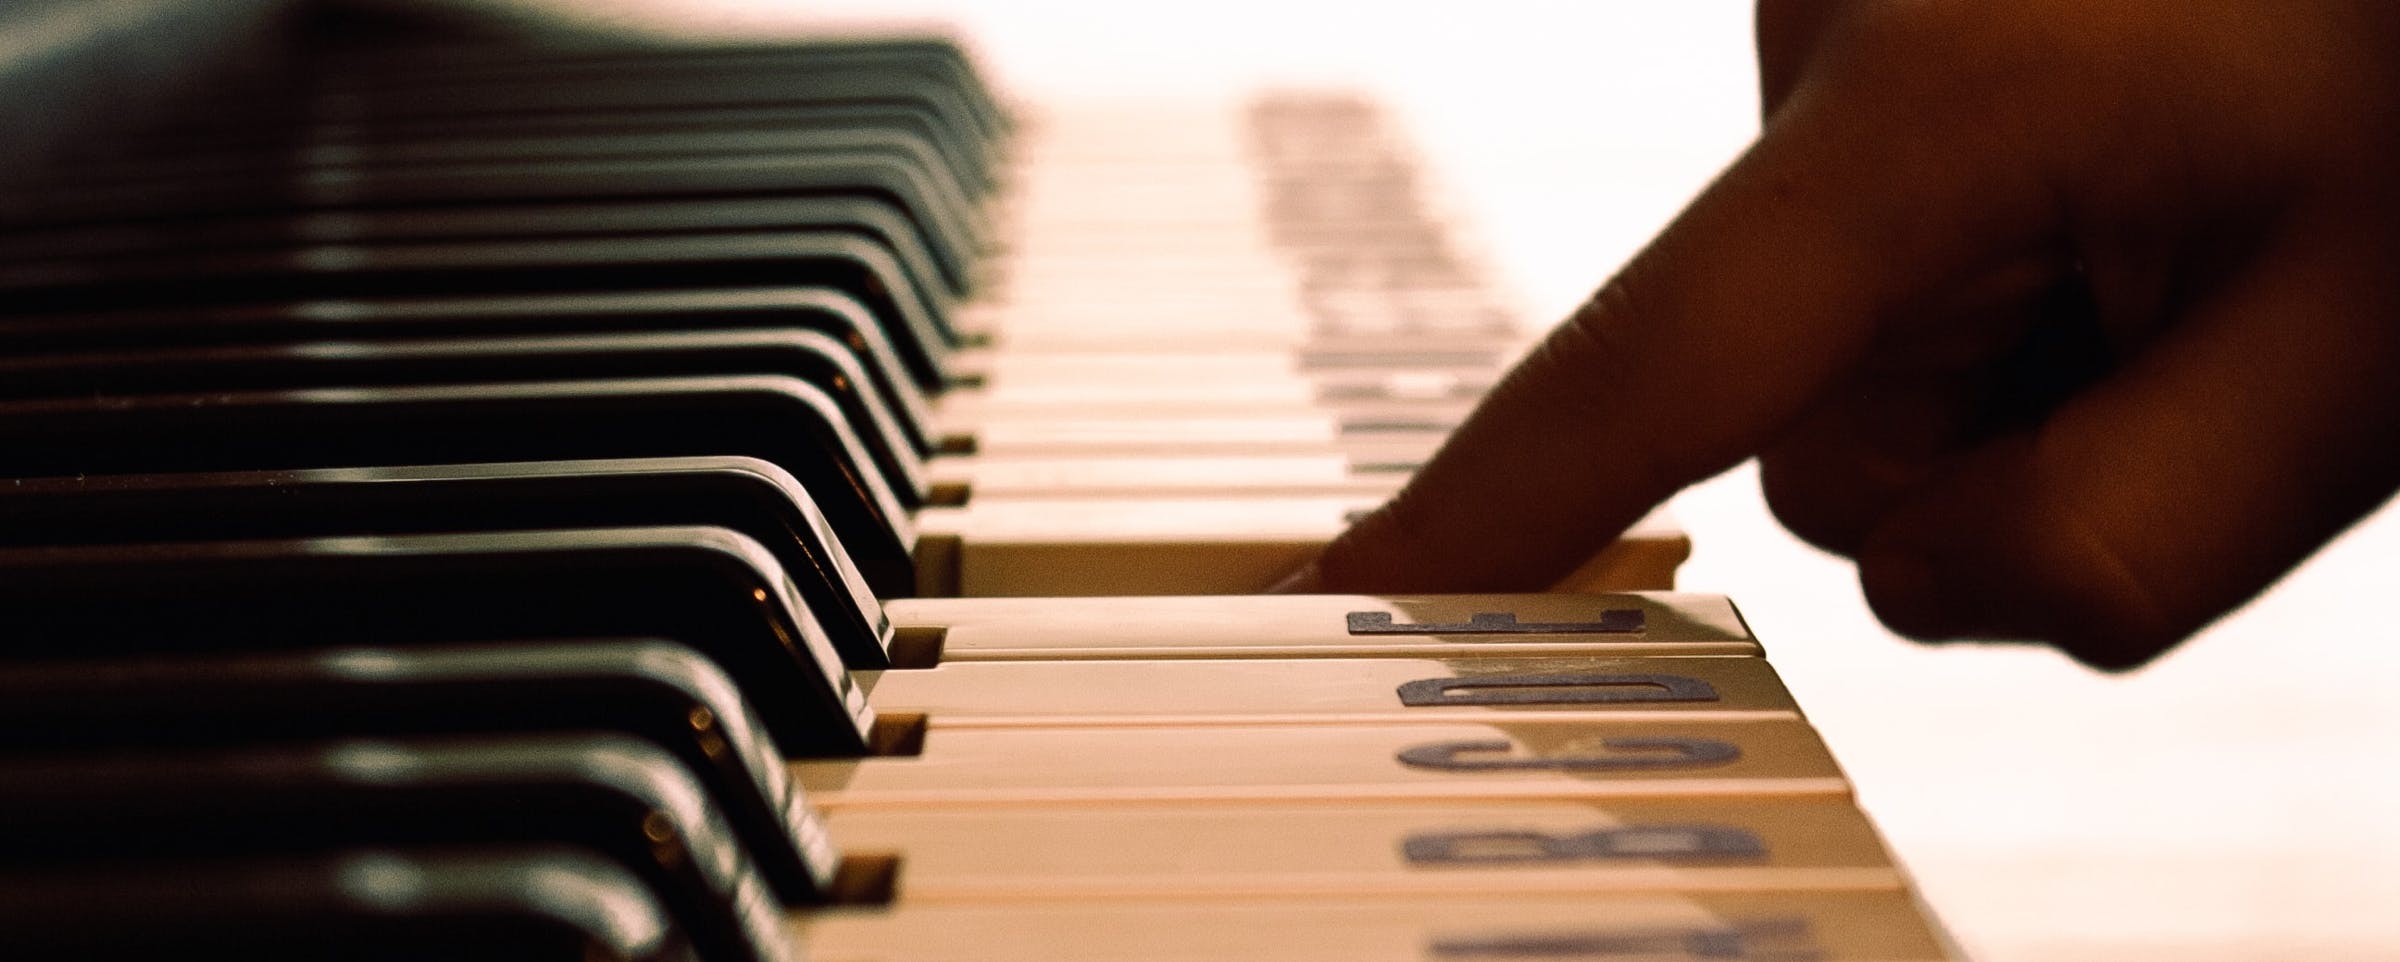 Les bonnes positions au piano - le corps, les bras, les mains